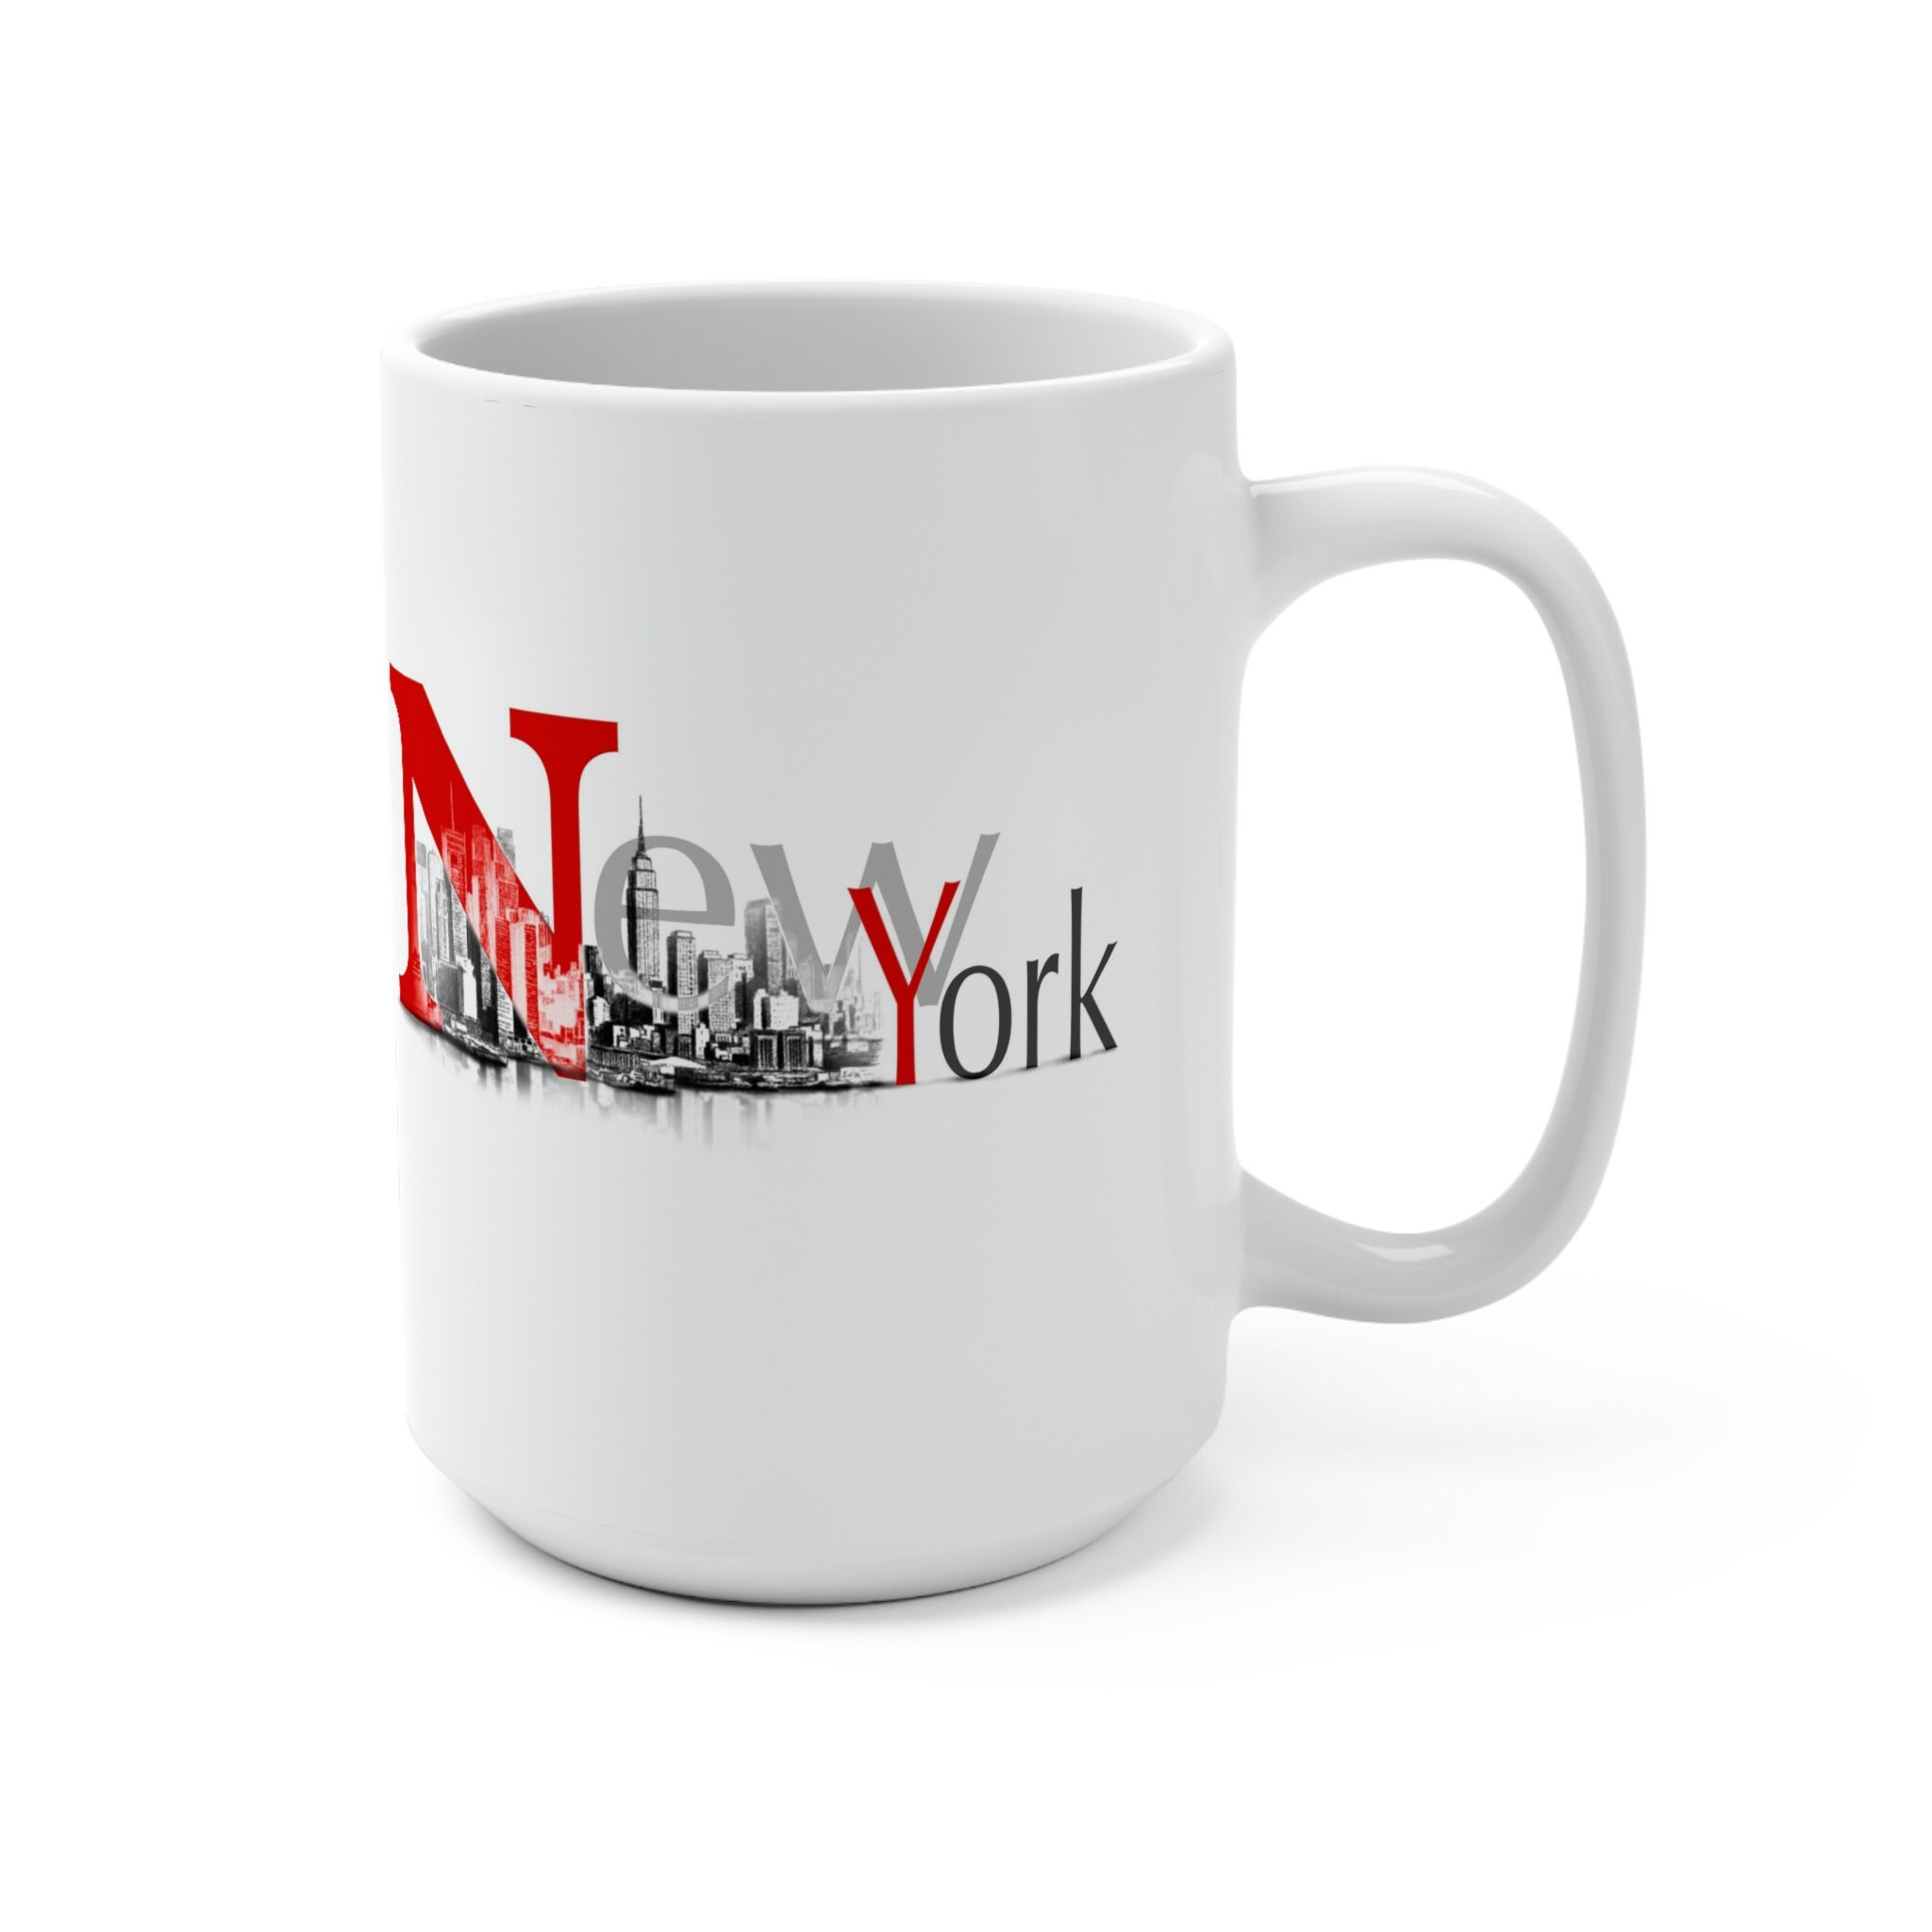 Discover New York City Coffee Mug